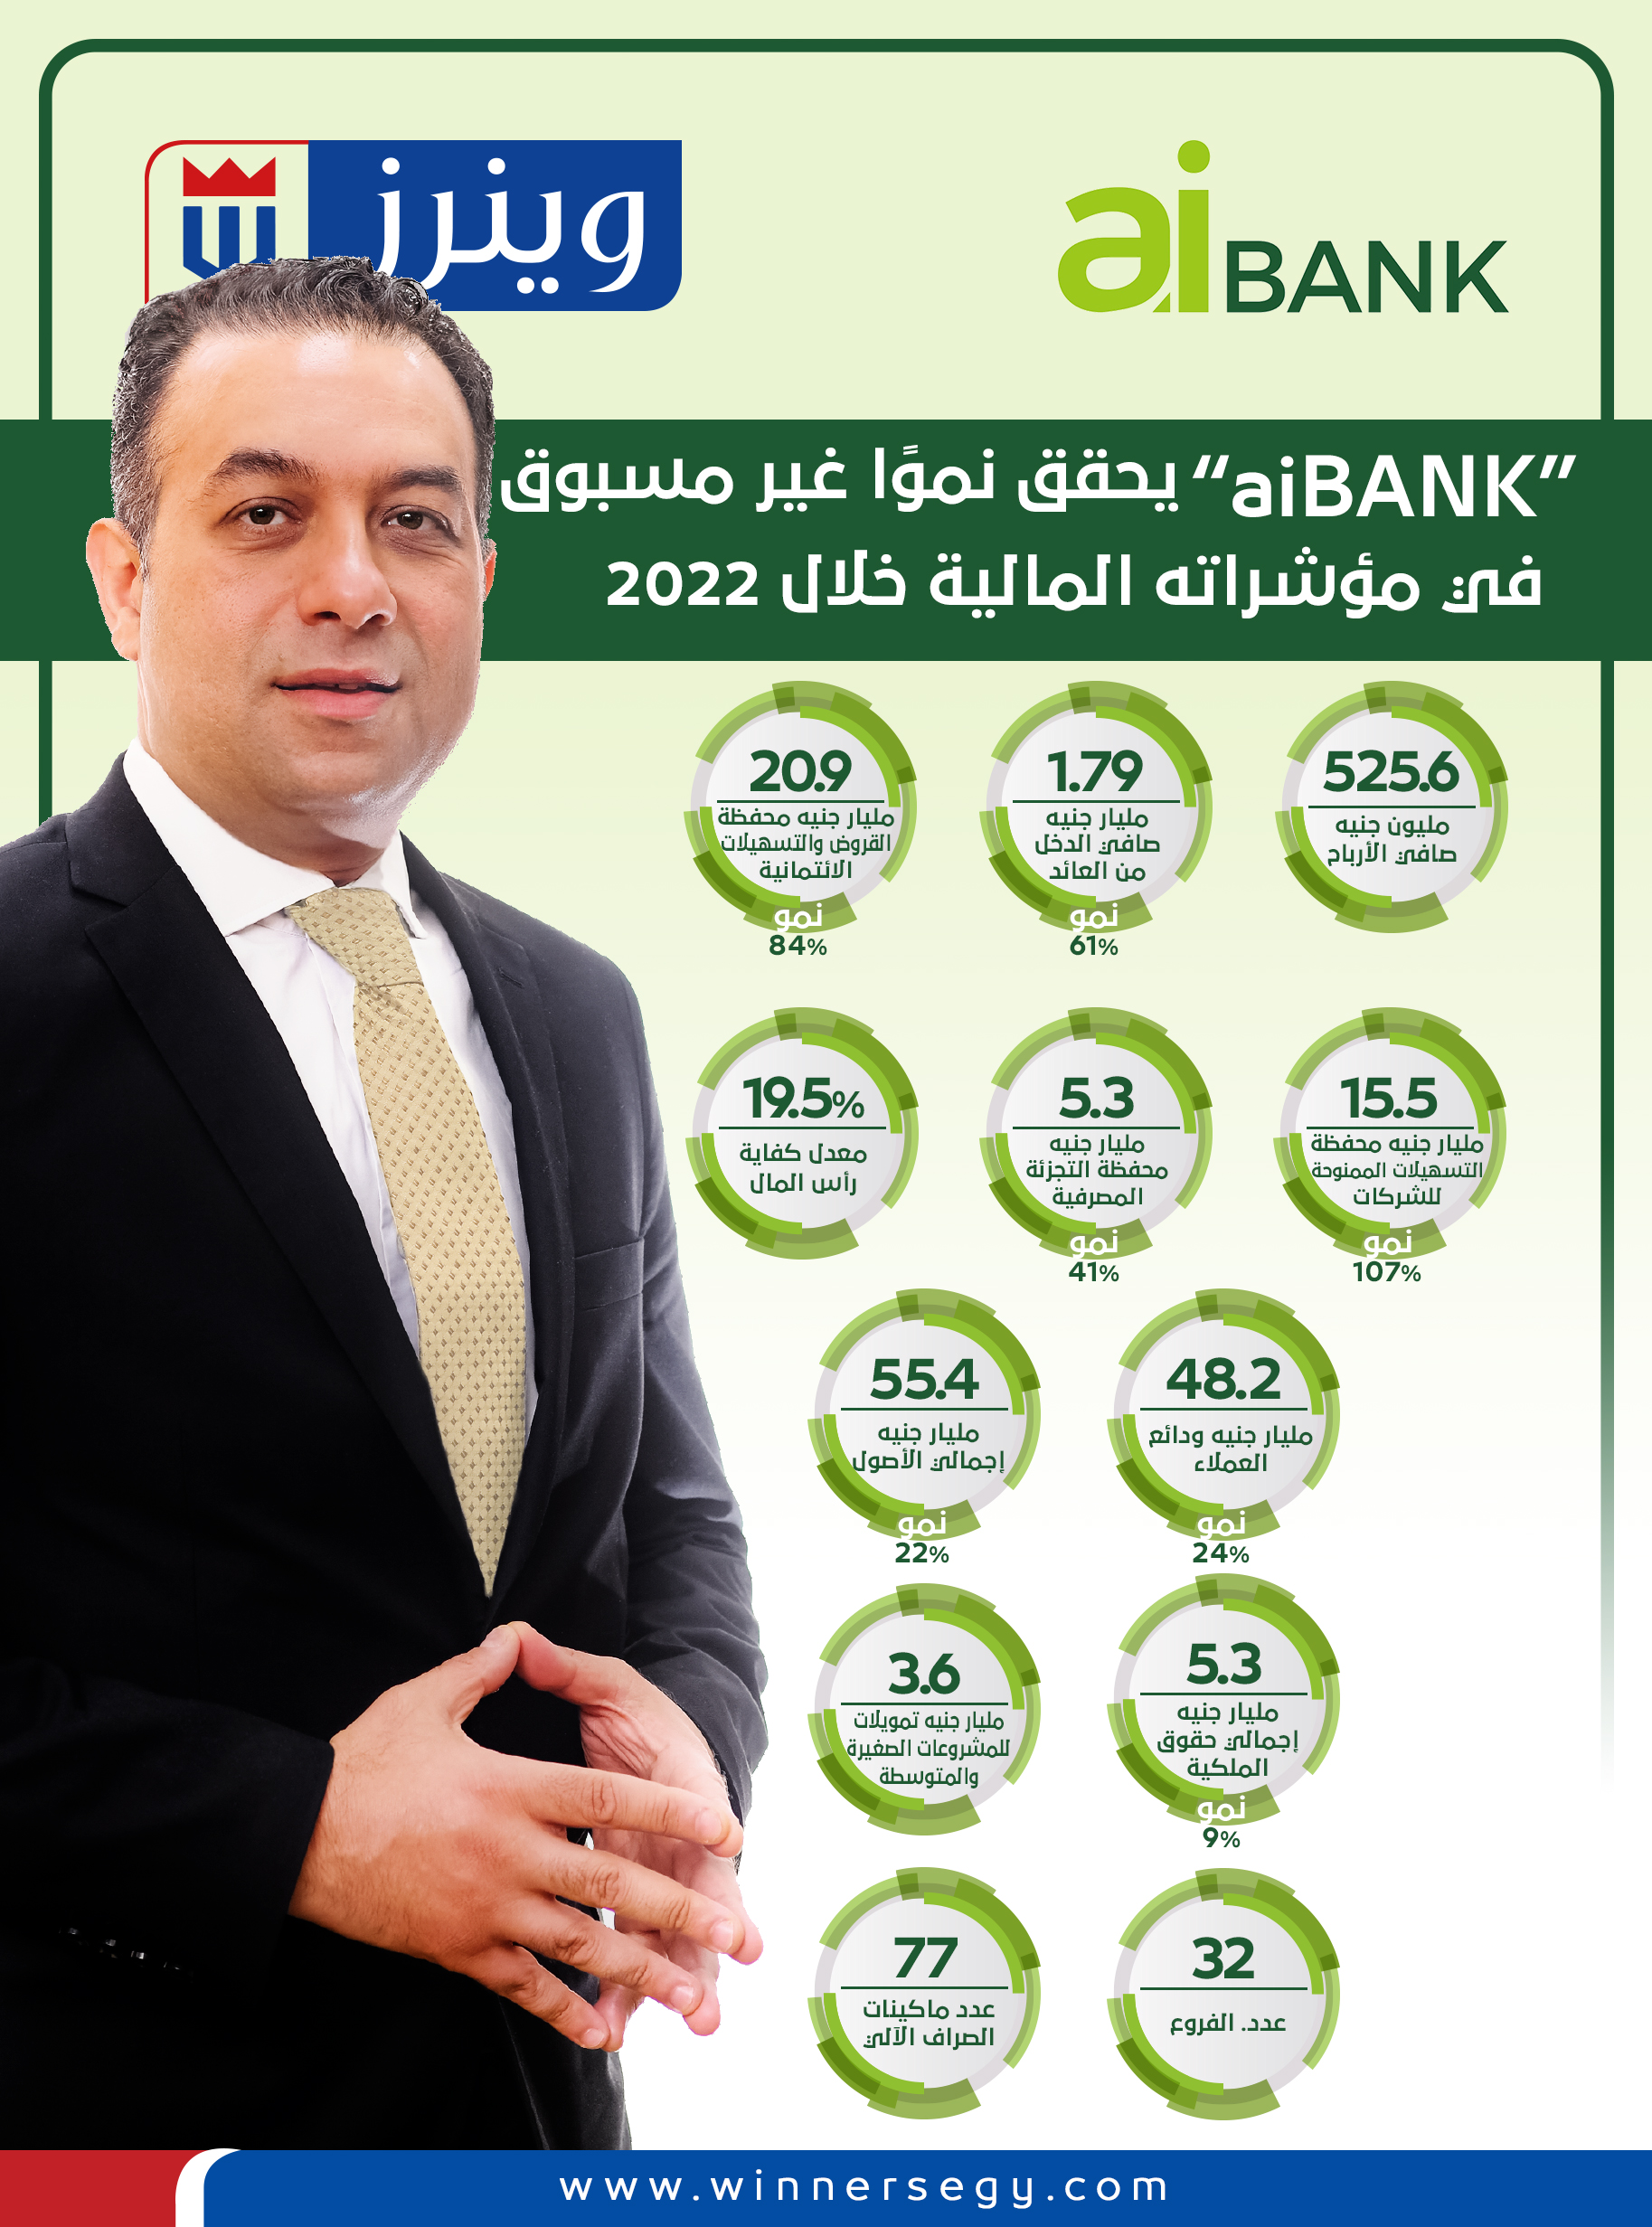 أبرز مؤشرات aiBANK بنهاية العام الماضي